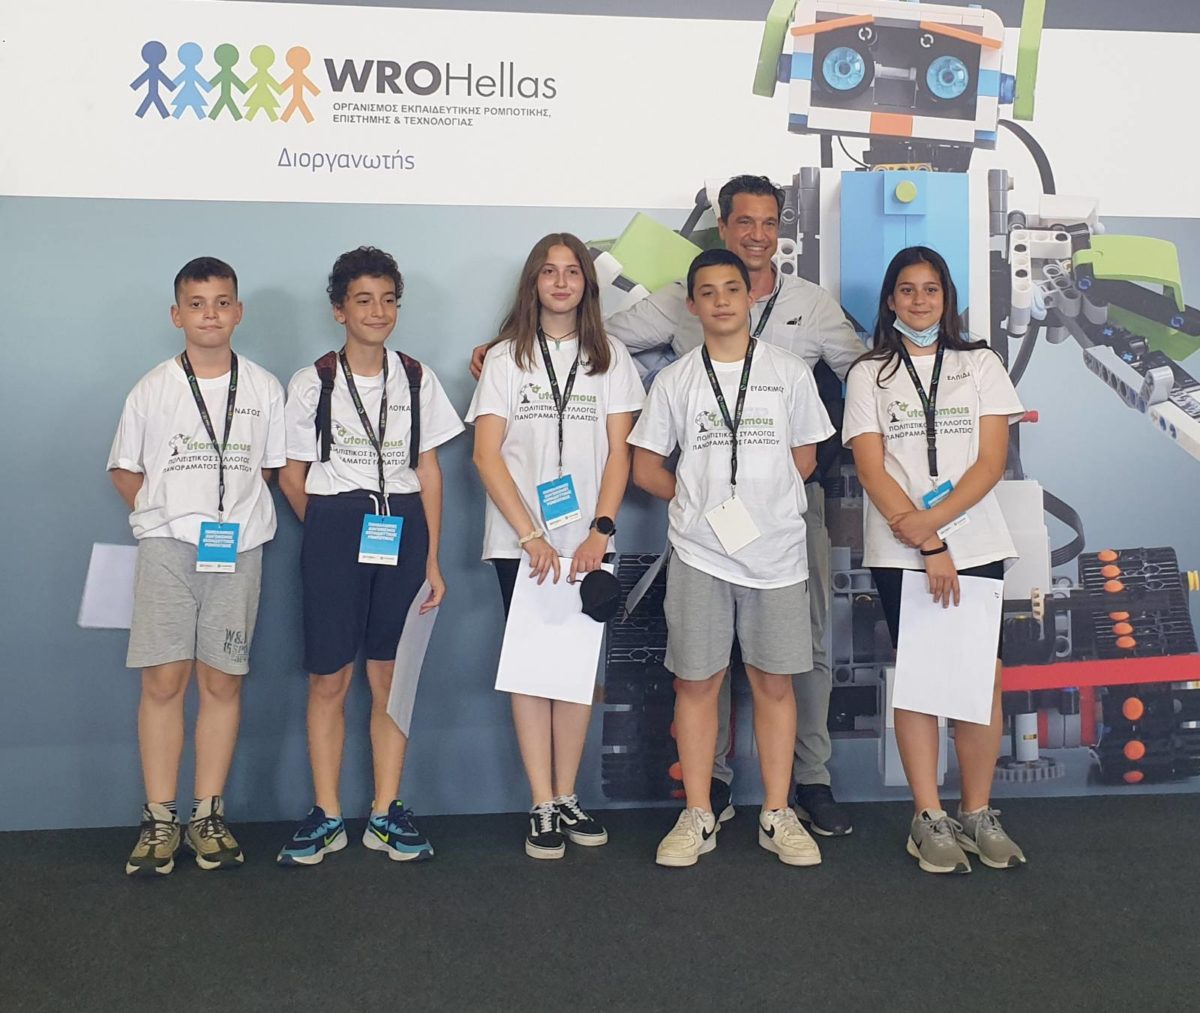 1η θέση και φέτος στον Πανελλήνιο Διαγωνισμό Ρομποτικής η AUTONOMΟUS  του Συλλόγου Πανοράματος Γαλατσίου